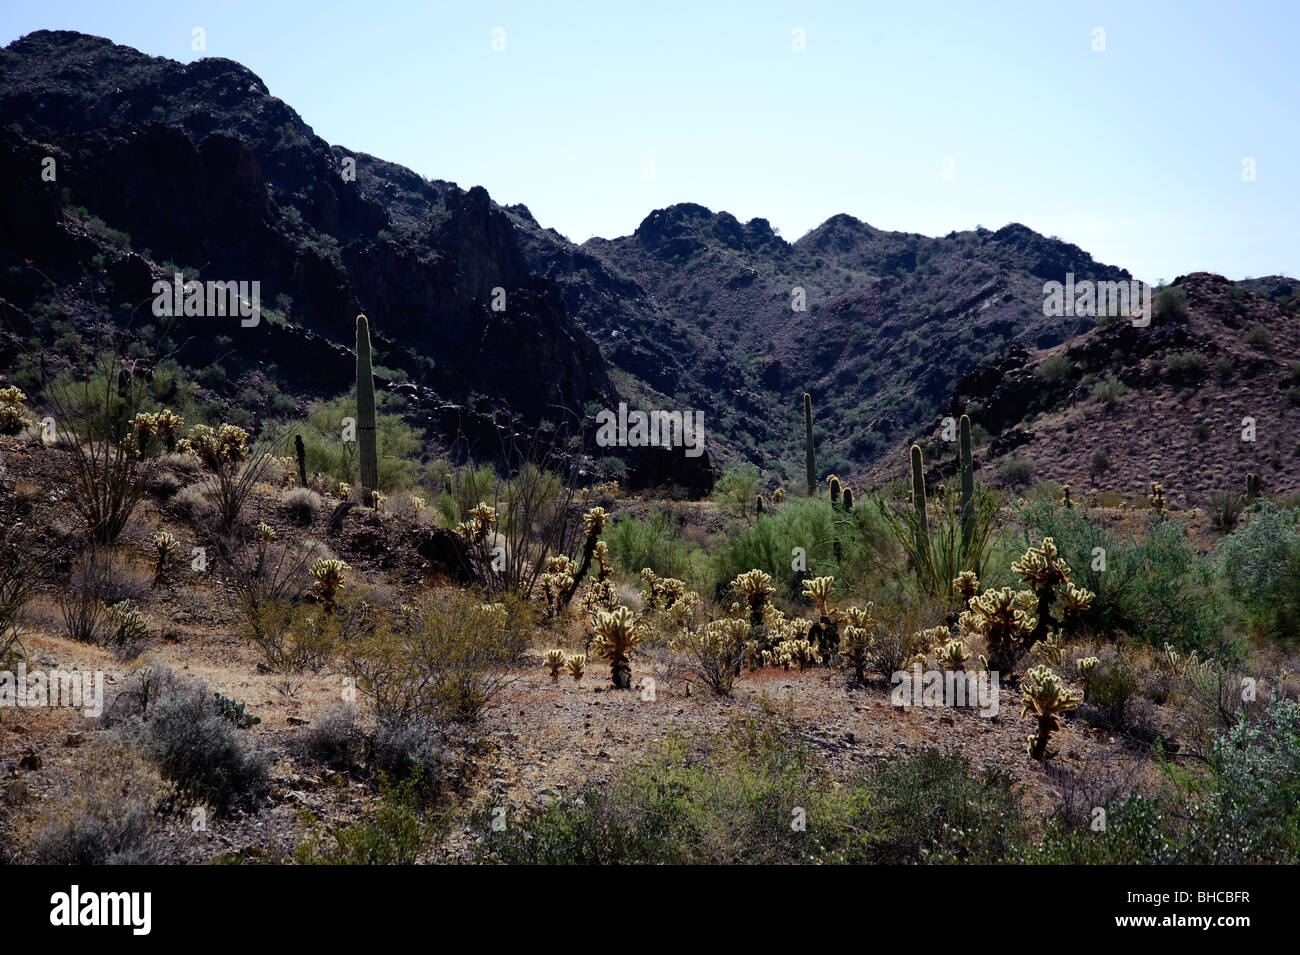 Berge des südlichen Arizona im Bereich Canyon Del Oro, direkt an der mexikanischen Grenze.  Bekannt als springen Kaktus Kakteen im Überfluss Stockfoto